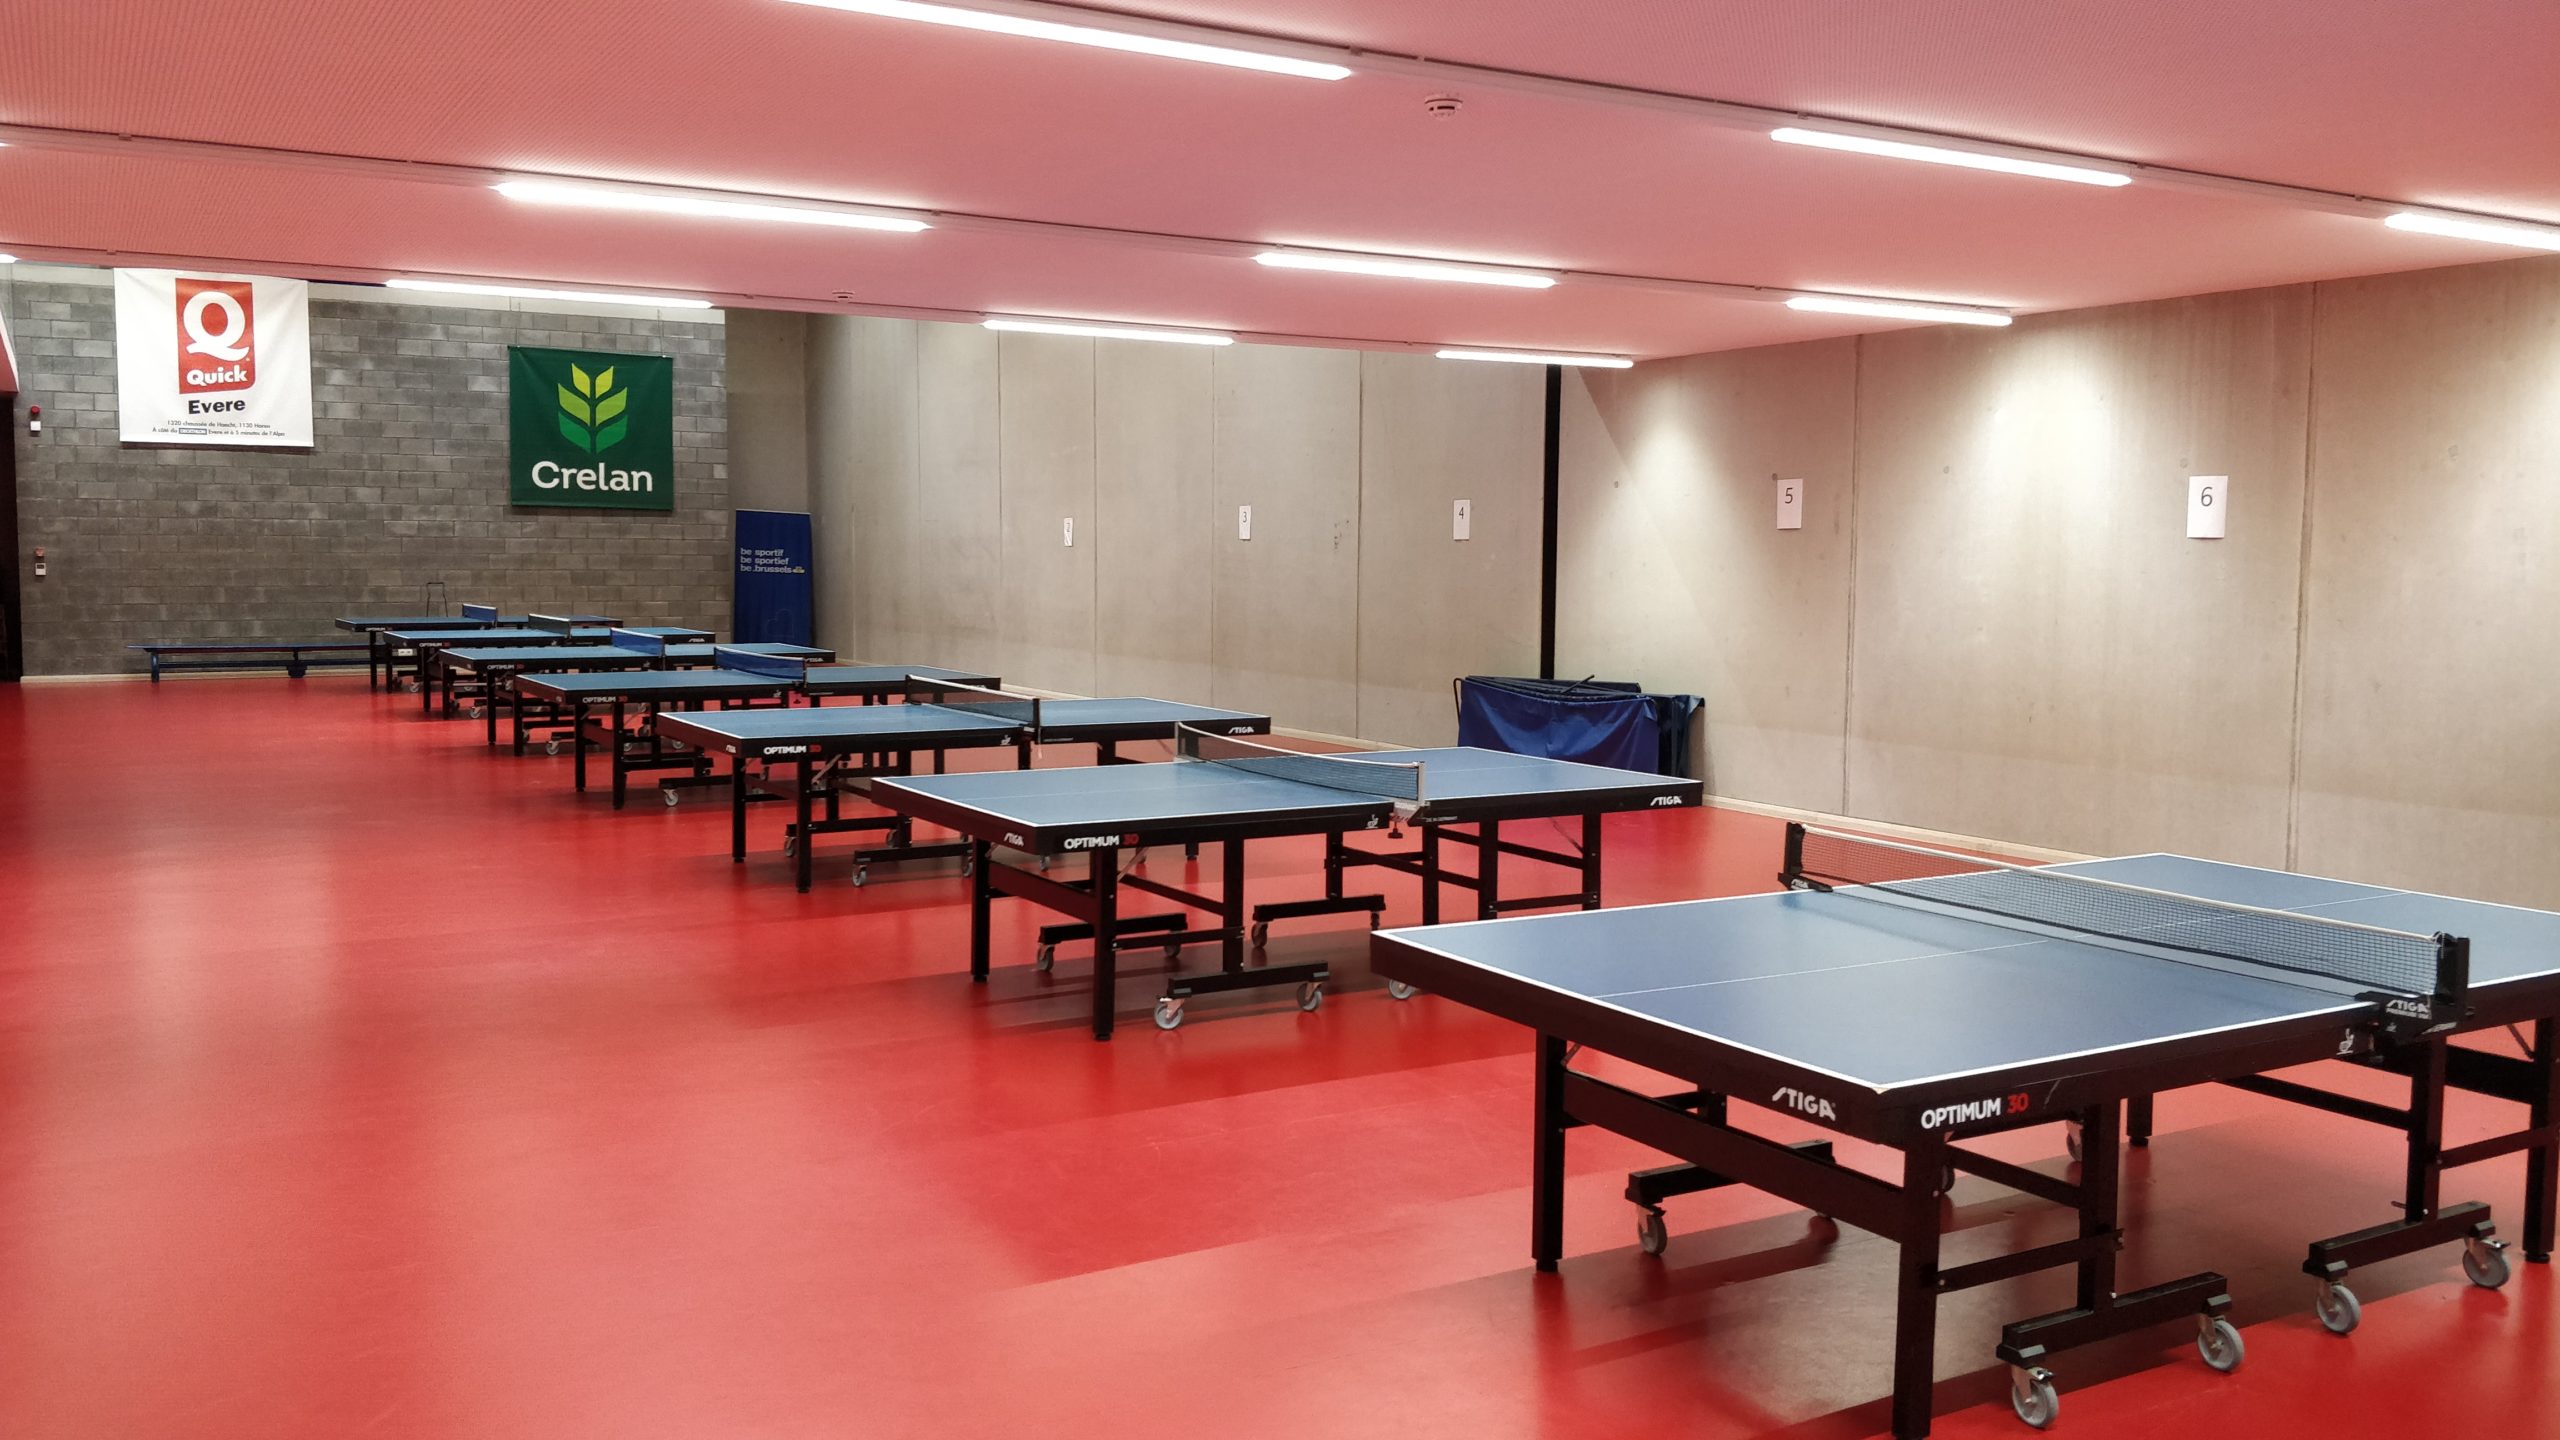 Salle de tennis de table, ping-pong, Alpa